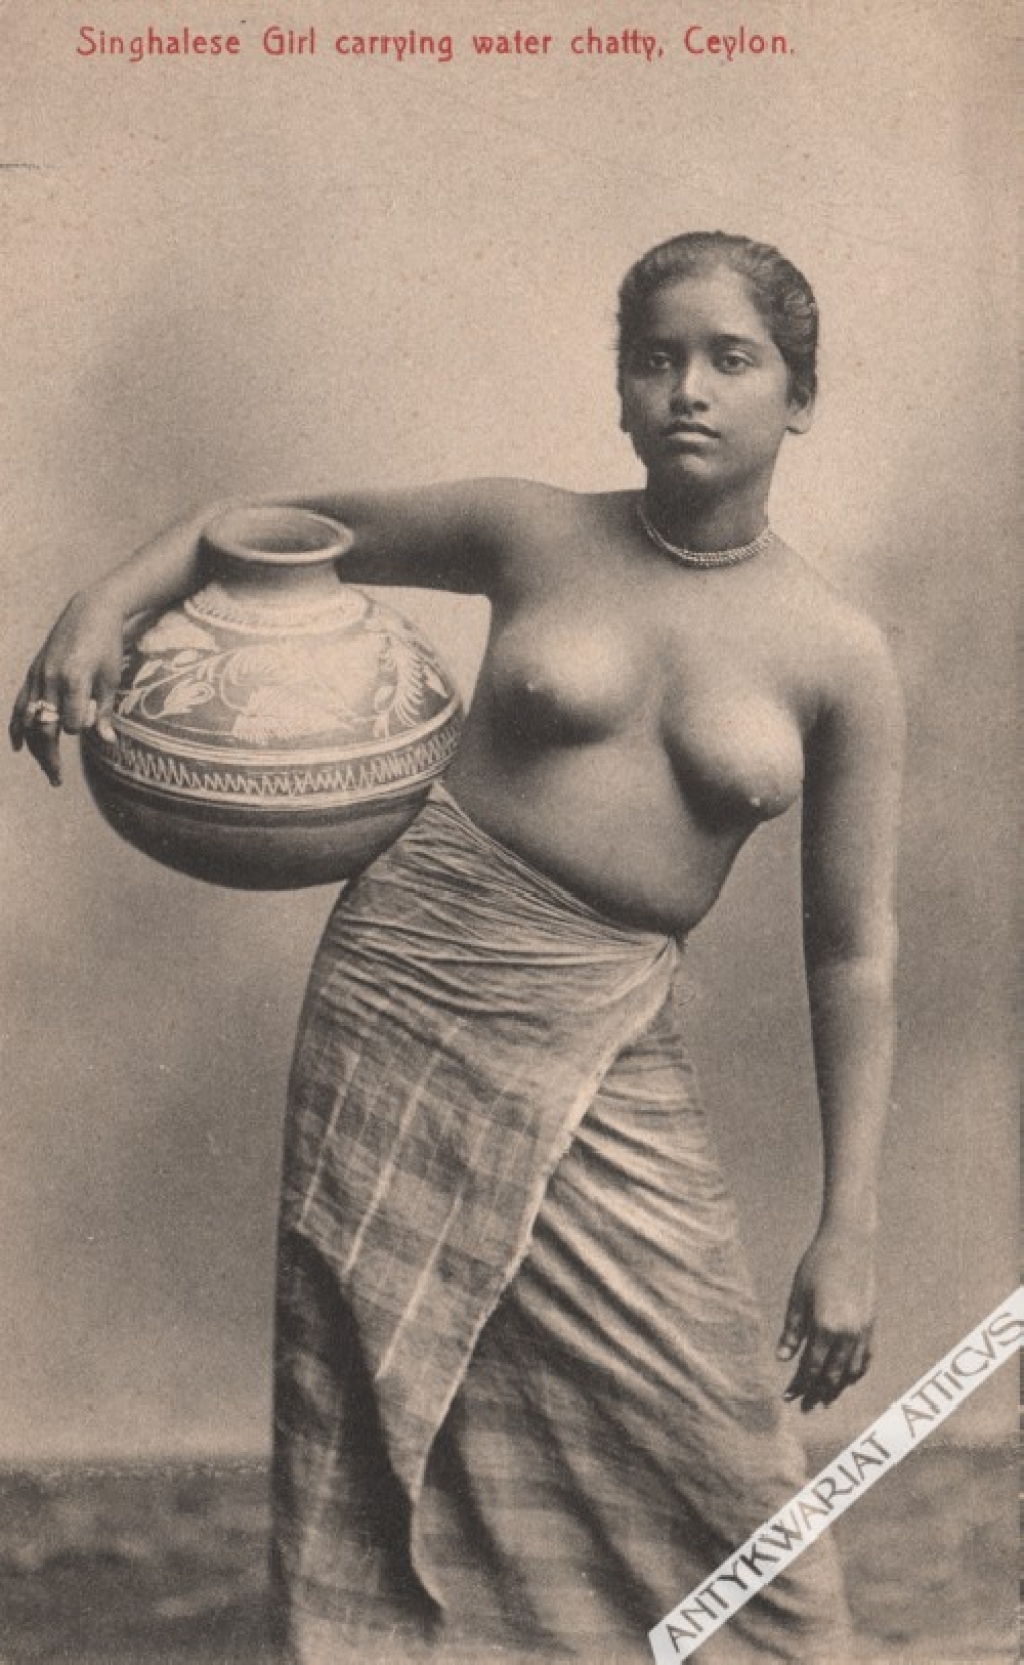 [pocztówka, ok. 1910] Singhalese Girl carrying water chatty. Ceylon [Syngalezka dziewczyna niosąca dzban z wodą]